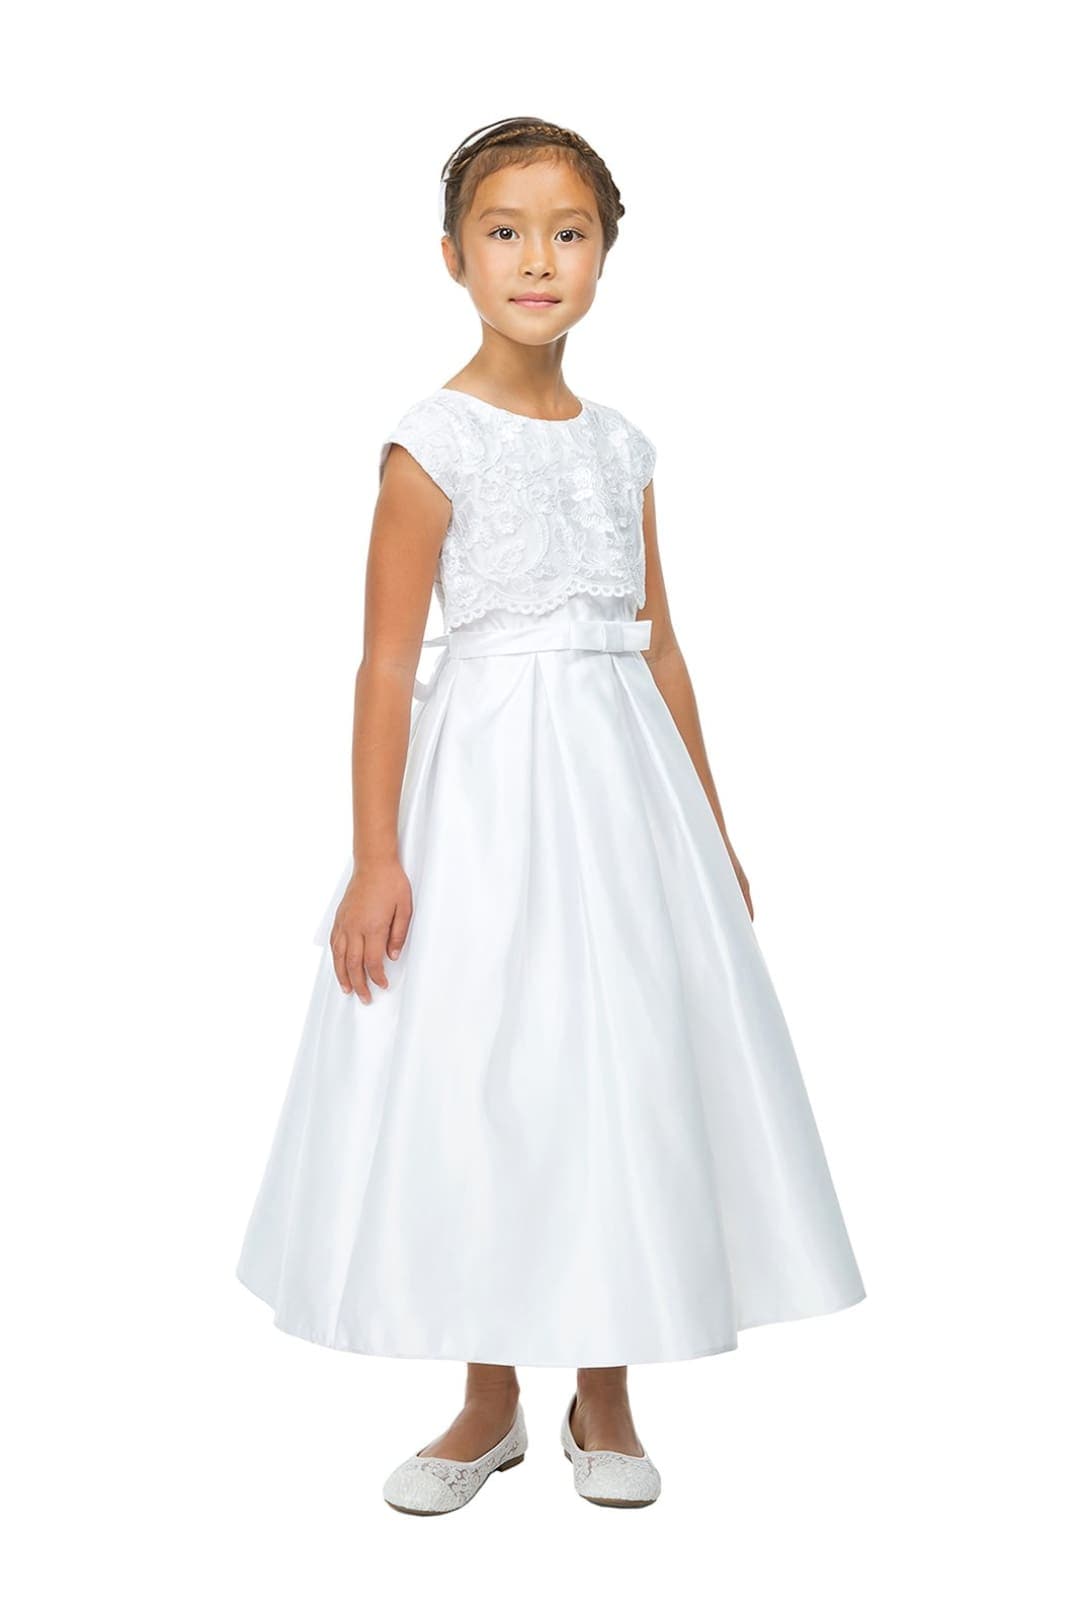 White Prom Dresses Under 100